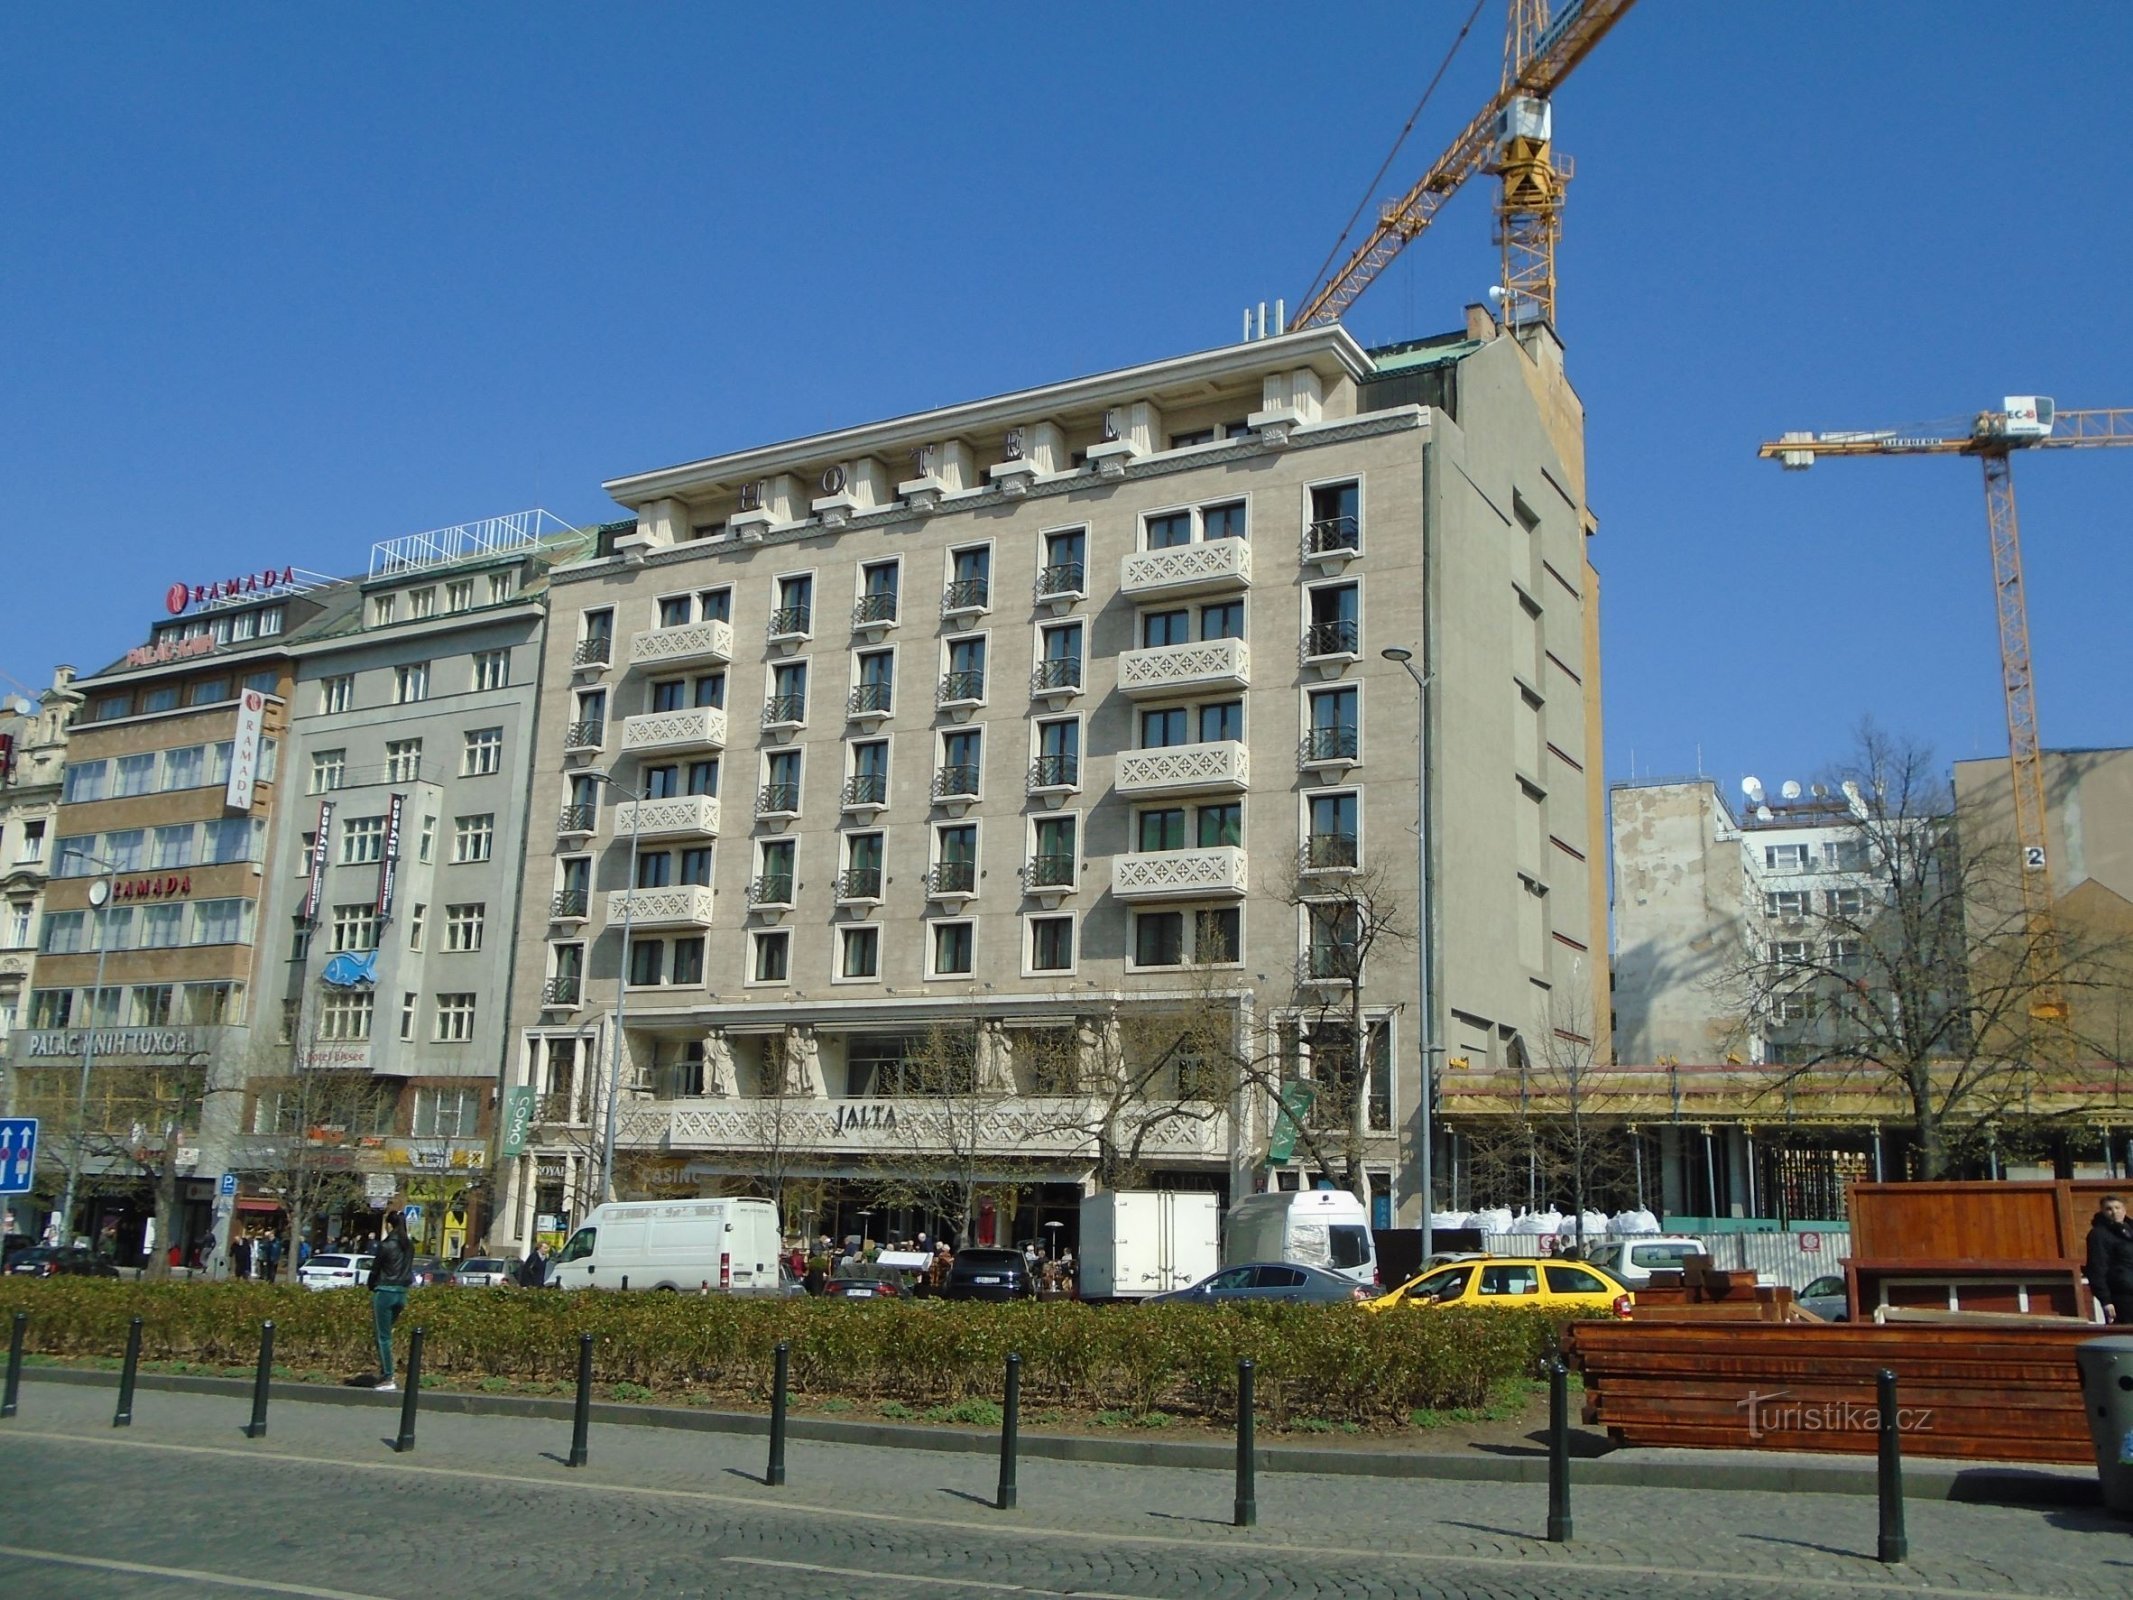 Hôtel Yalta (Prague, 1.4.2019er avril XNUMX)